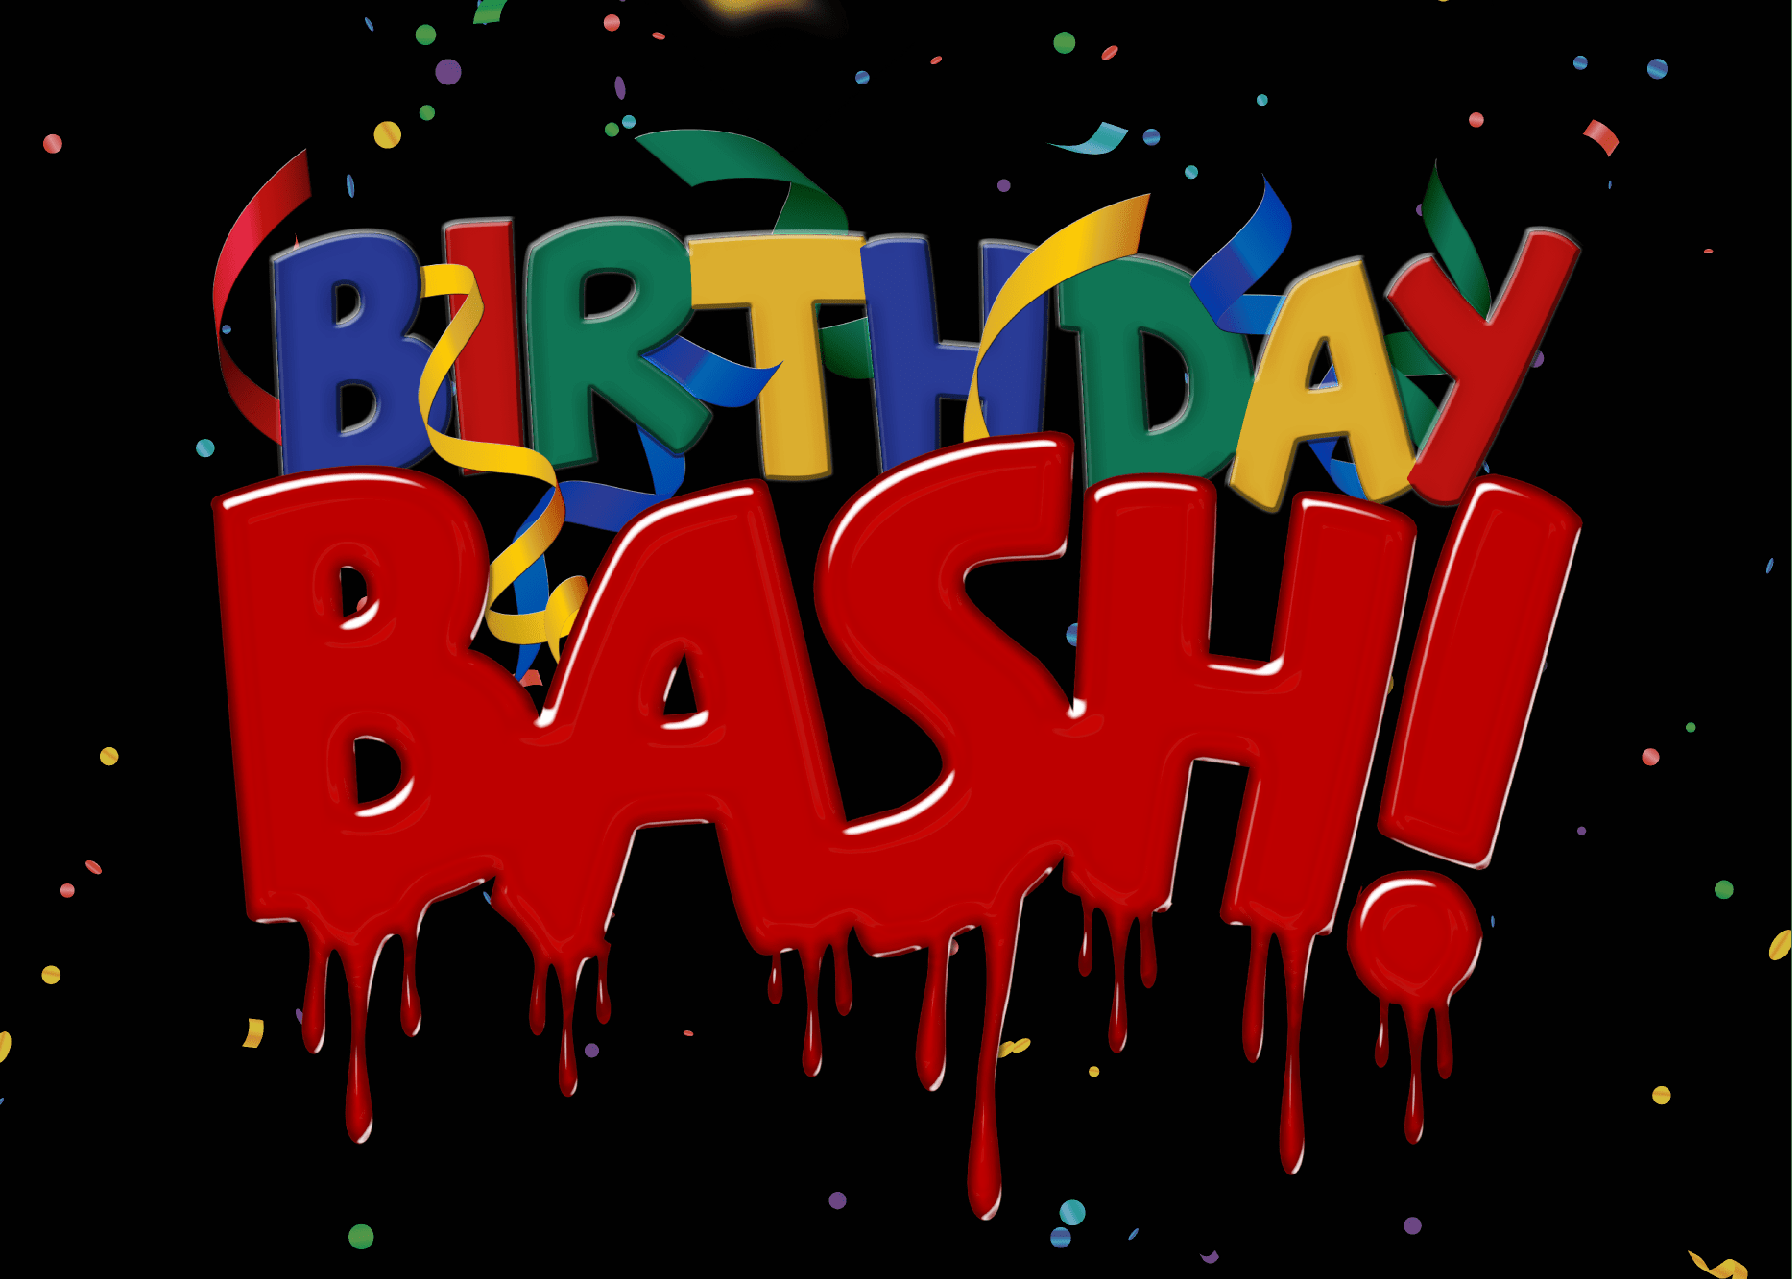 Birthday Bash Logo